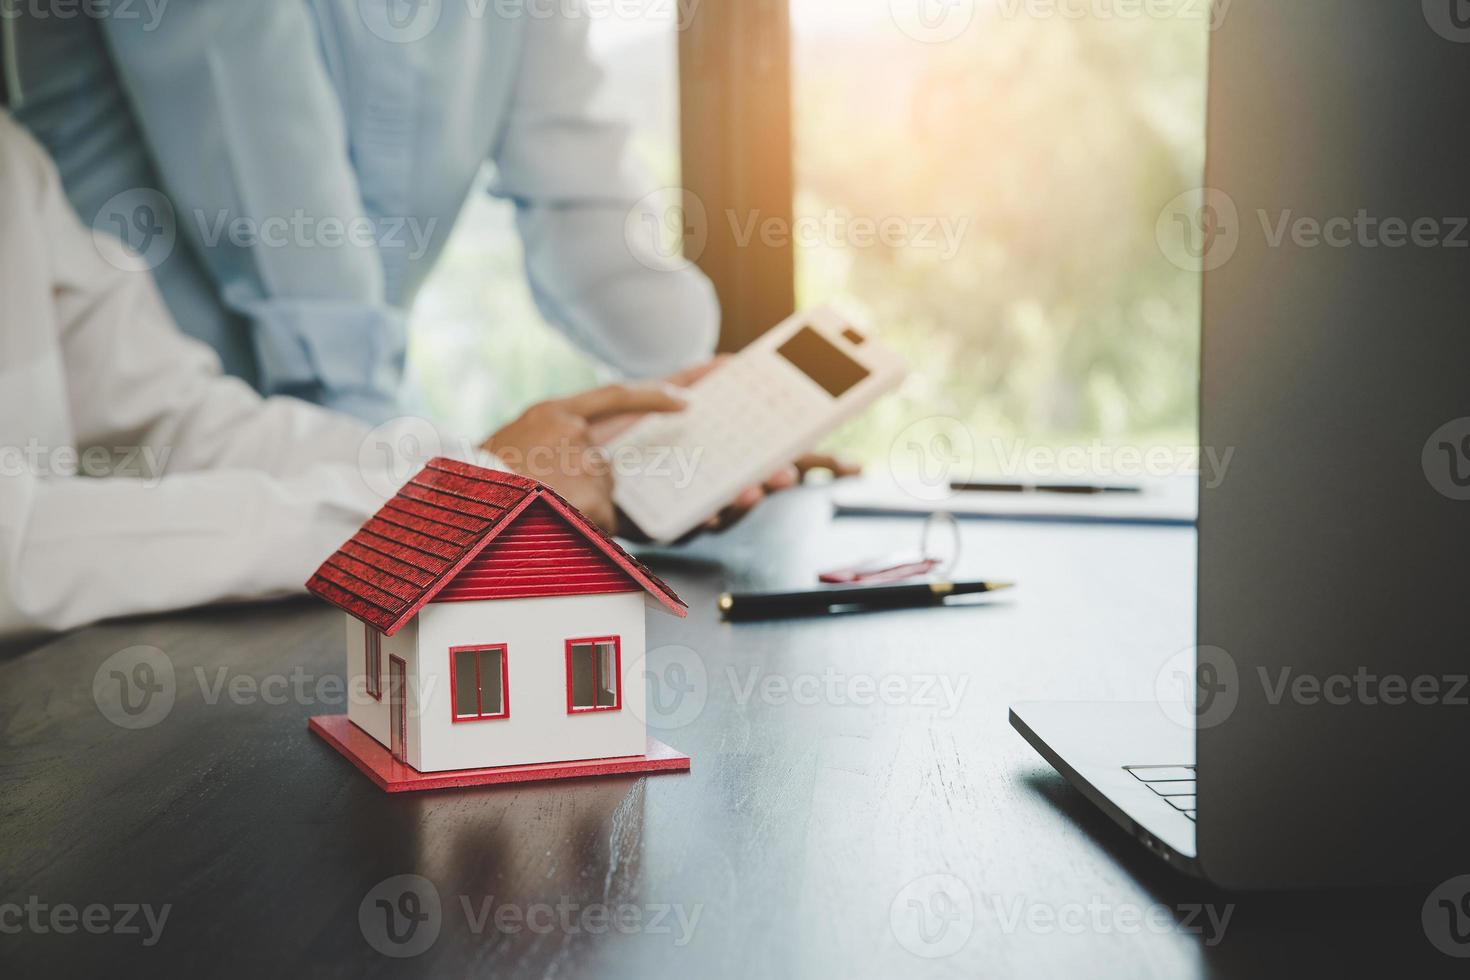 fastighetsmäklare presenterar och rådgör med kund till beslutsfattande teckna försäkringsformulär avtal, hemmodell, gällande bolåneerbjudande för och villaförsäkring. foto